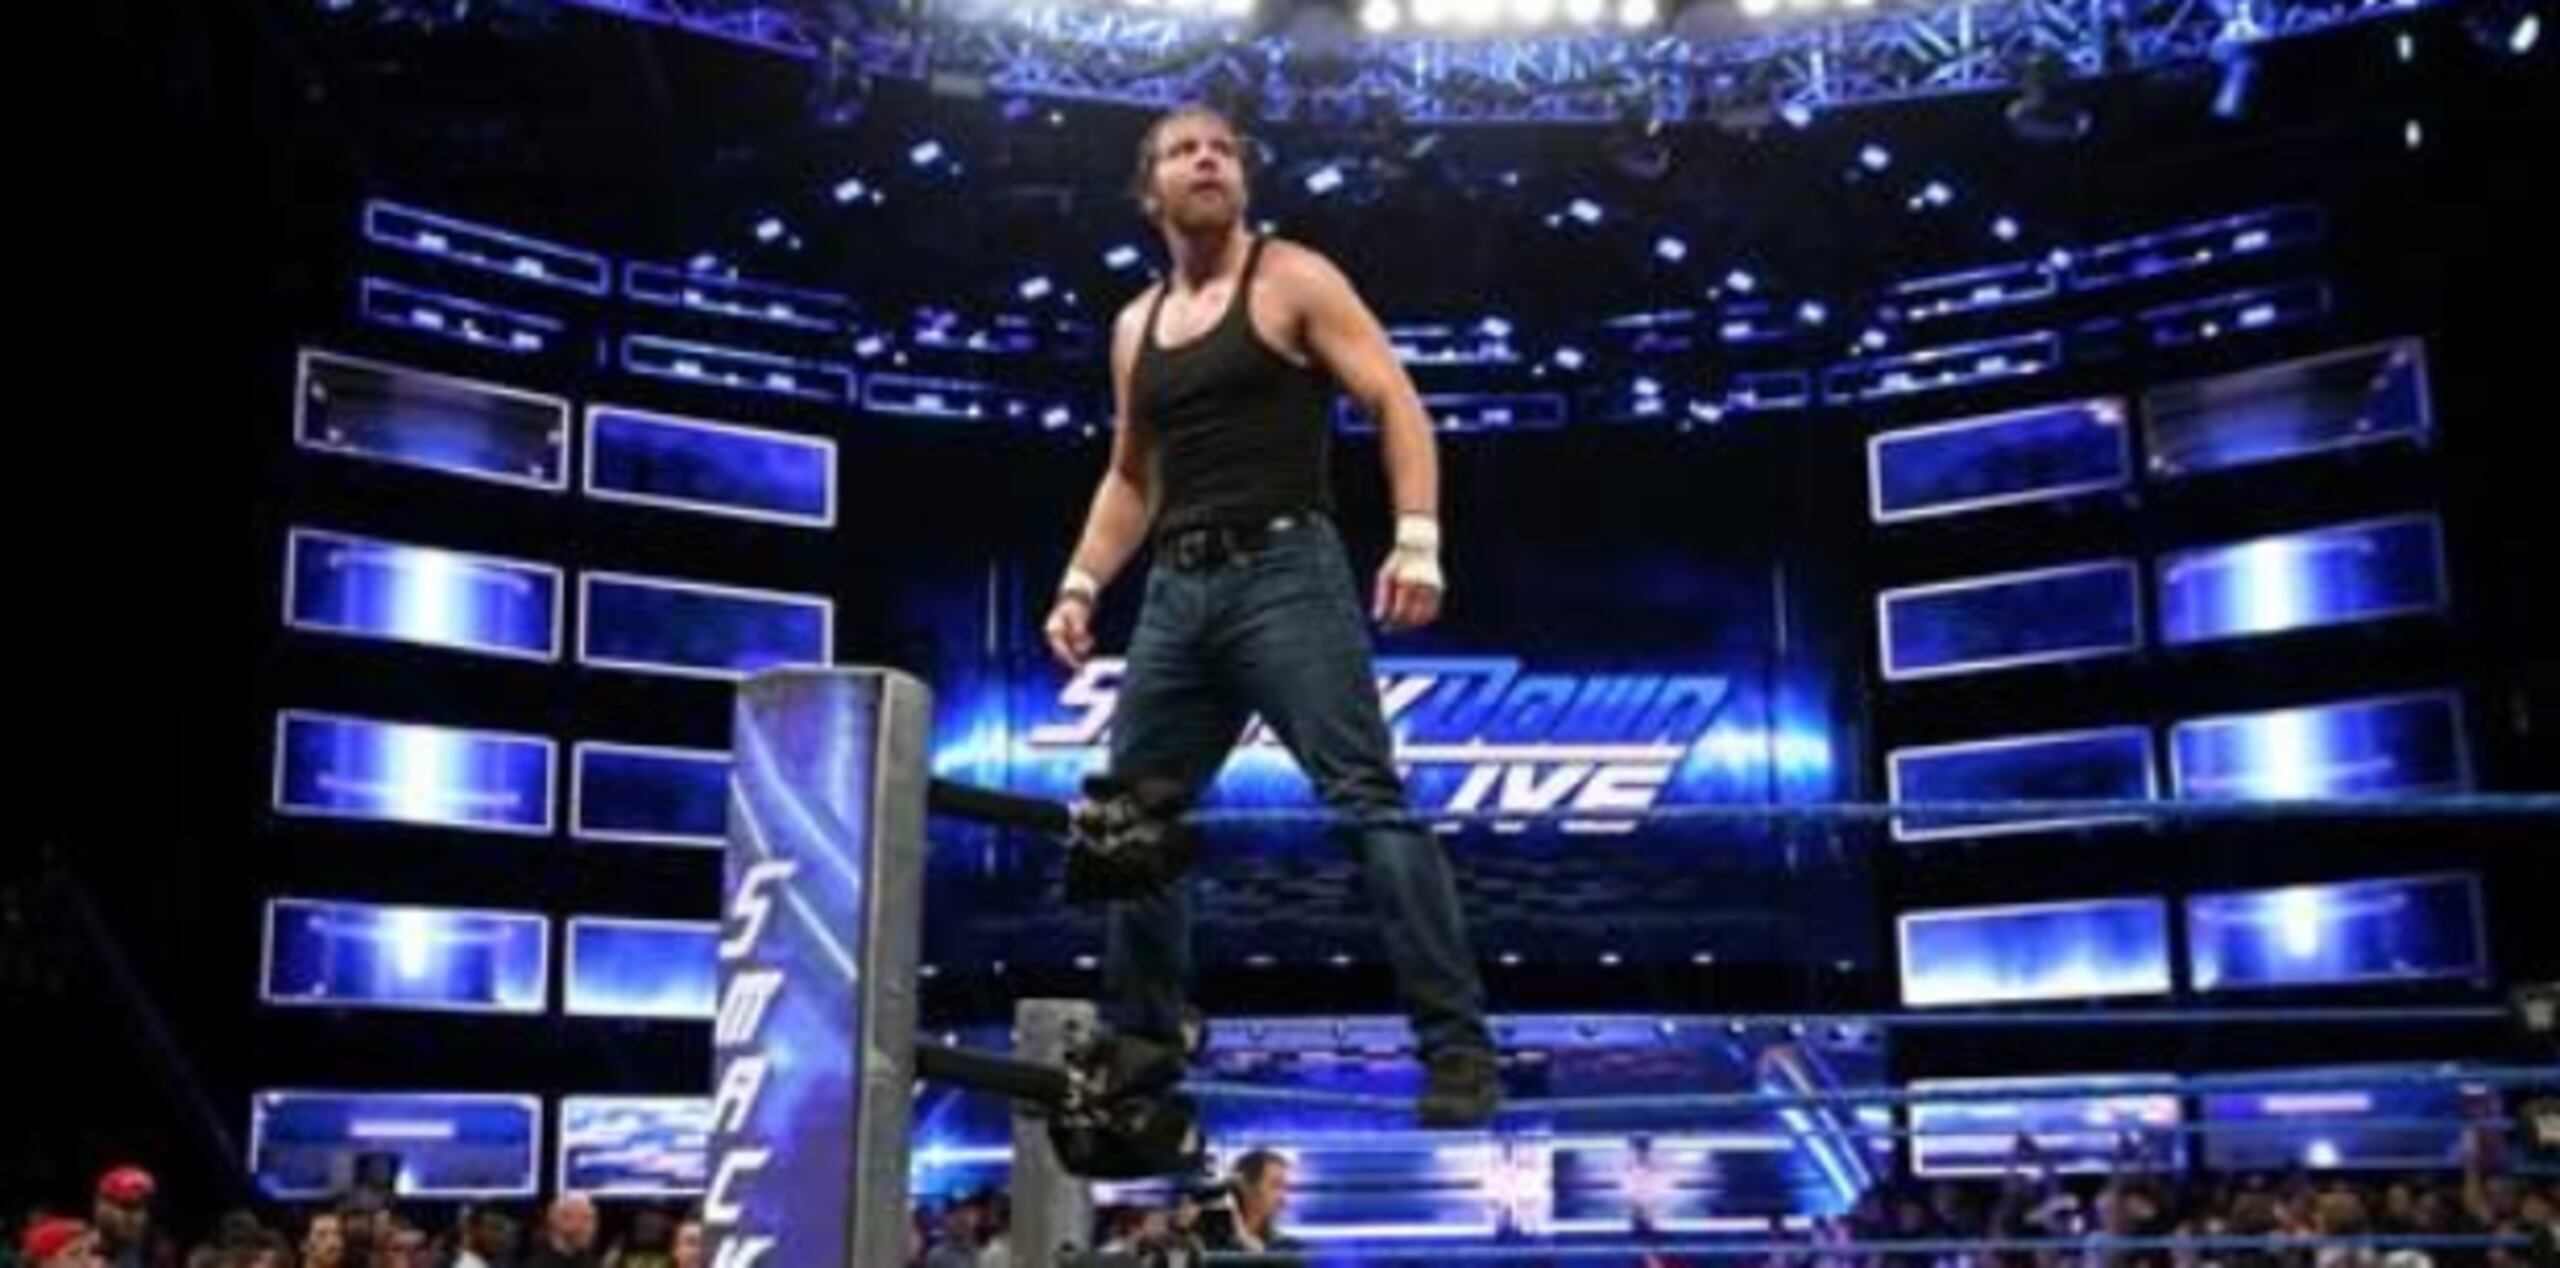 Dean Ambrose es uno de los destacados luchadores que se espera sean protagonistas en el show que traerá WWE a Puerto Rico. (Suministrada)